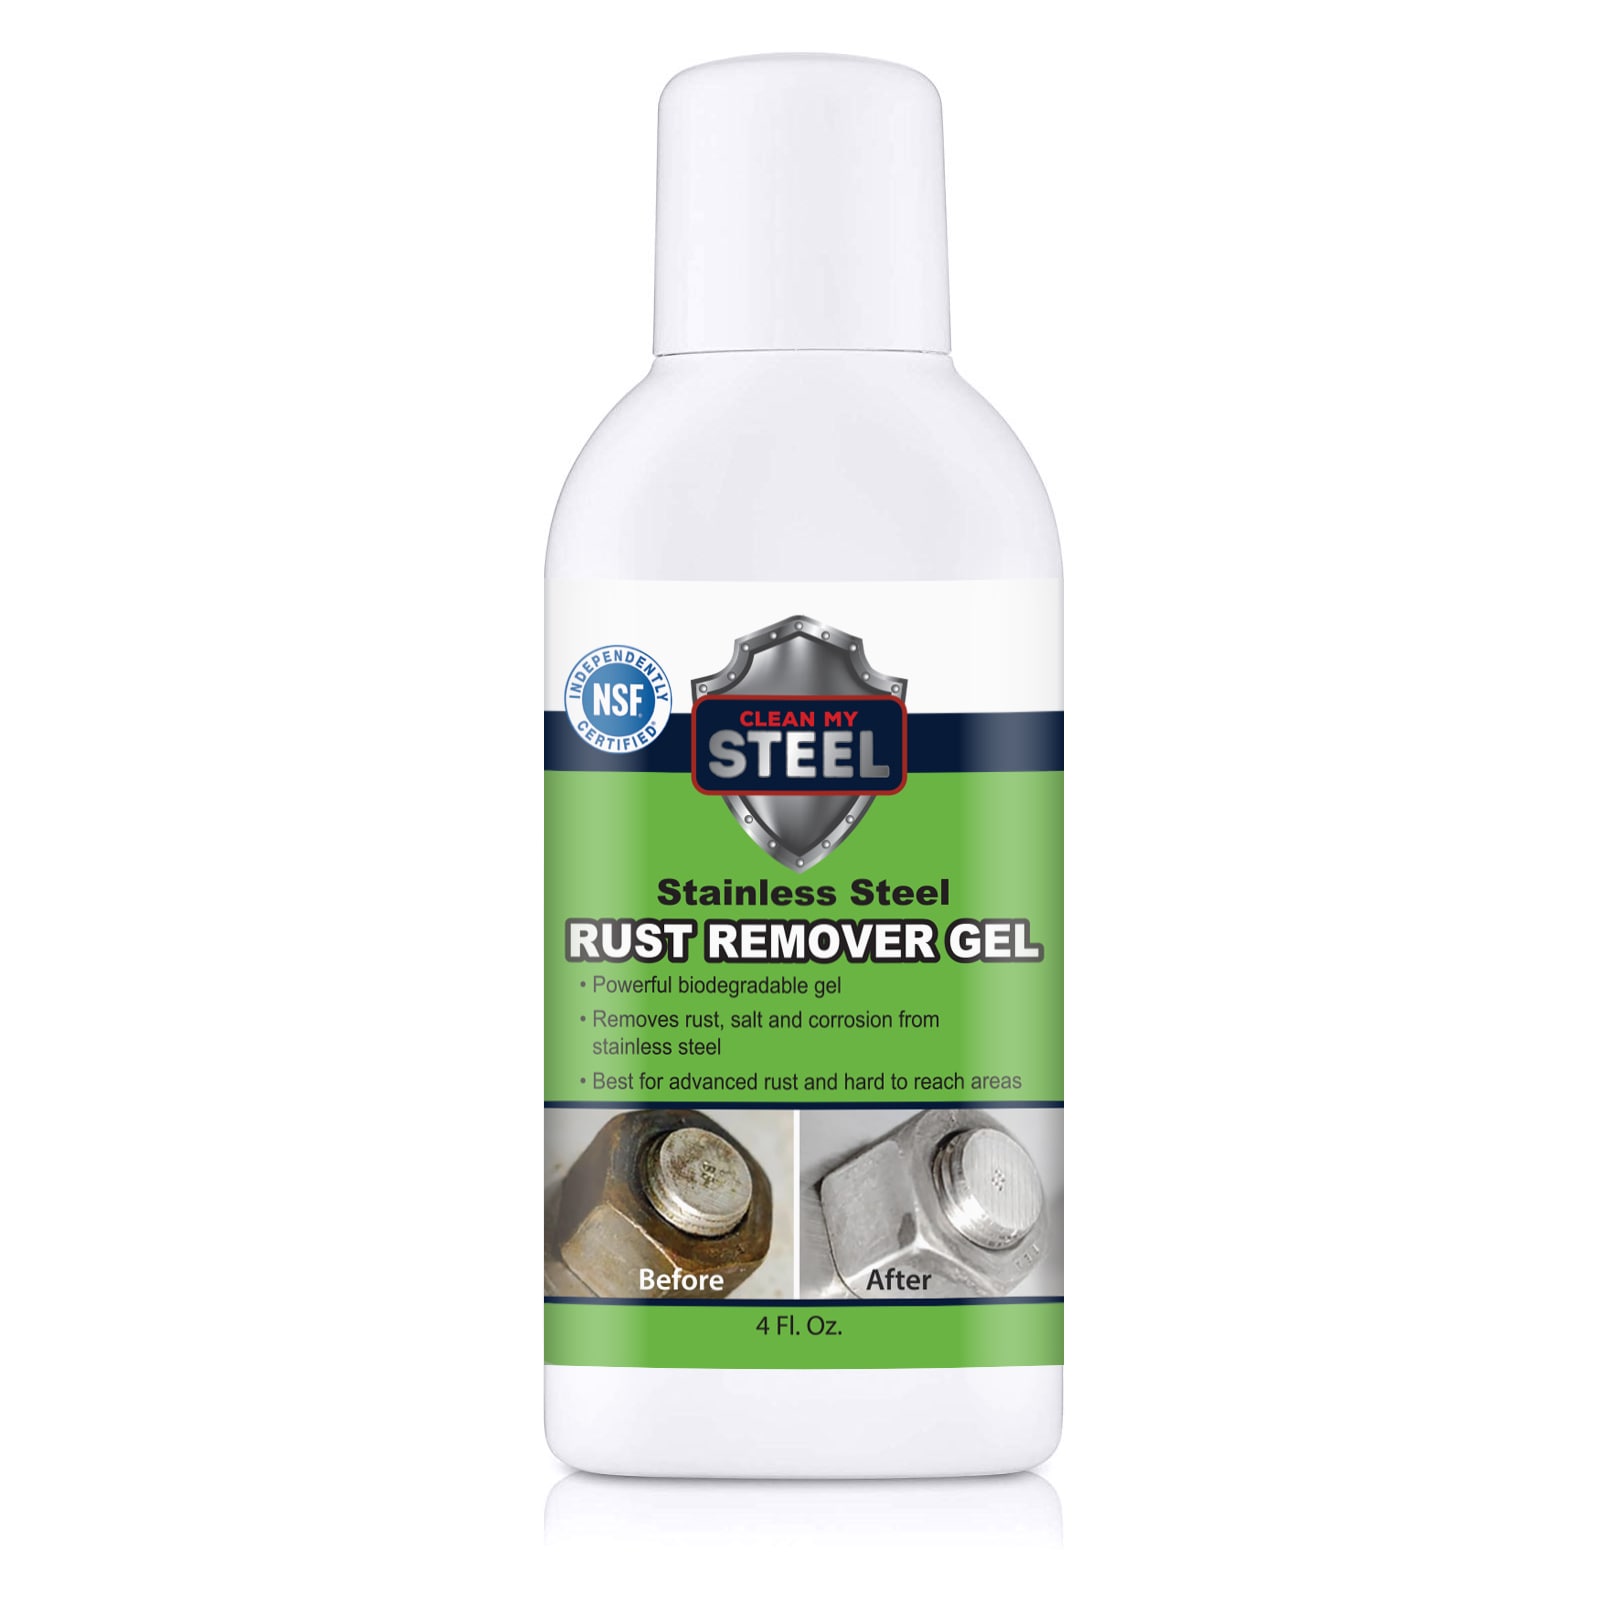 Hope's 8.5-fl oz Herbal Stainless Steel Cleaner